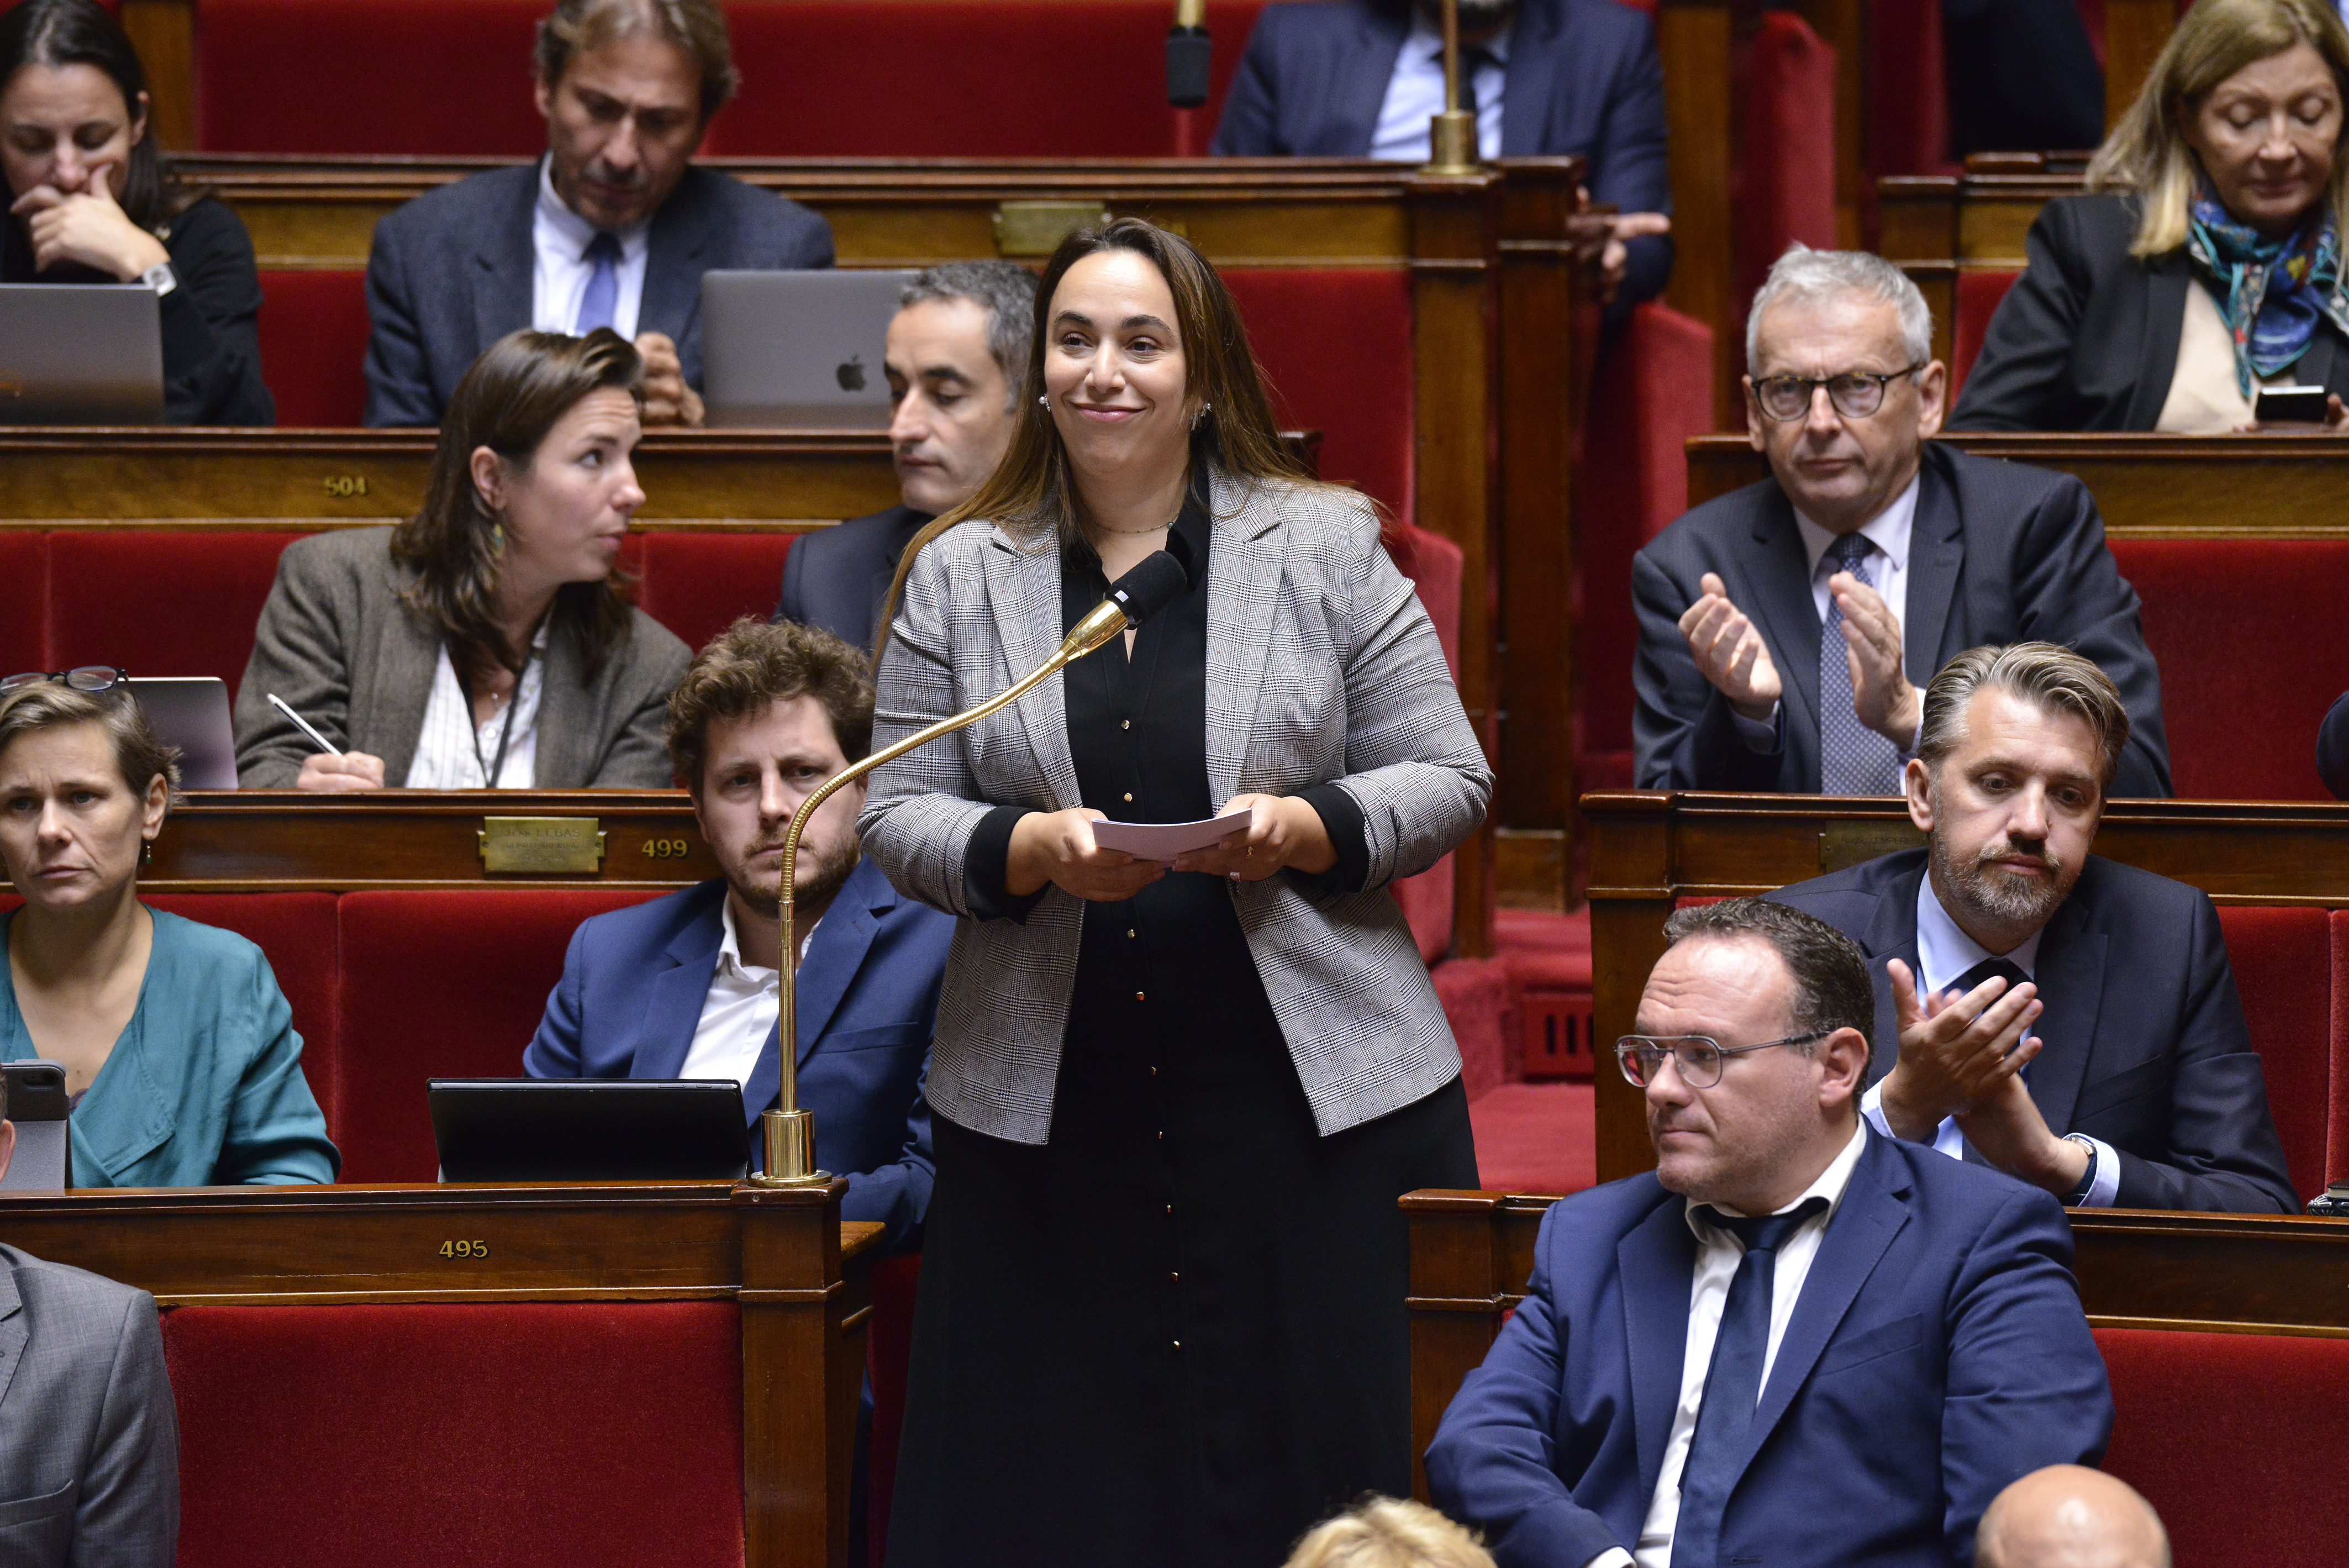 Sabrina Sebaihi, députée EELV de la 4e circonscription des Hauts-de-Seine, est rapporteure de la commission d'enquête parlementaire sur les défaillances dans les fédérations sportives françaises, notamment en matière de violences sexuelles. Assemblée nationale